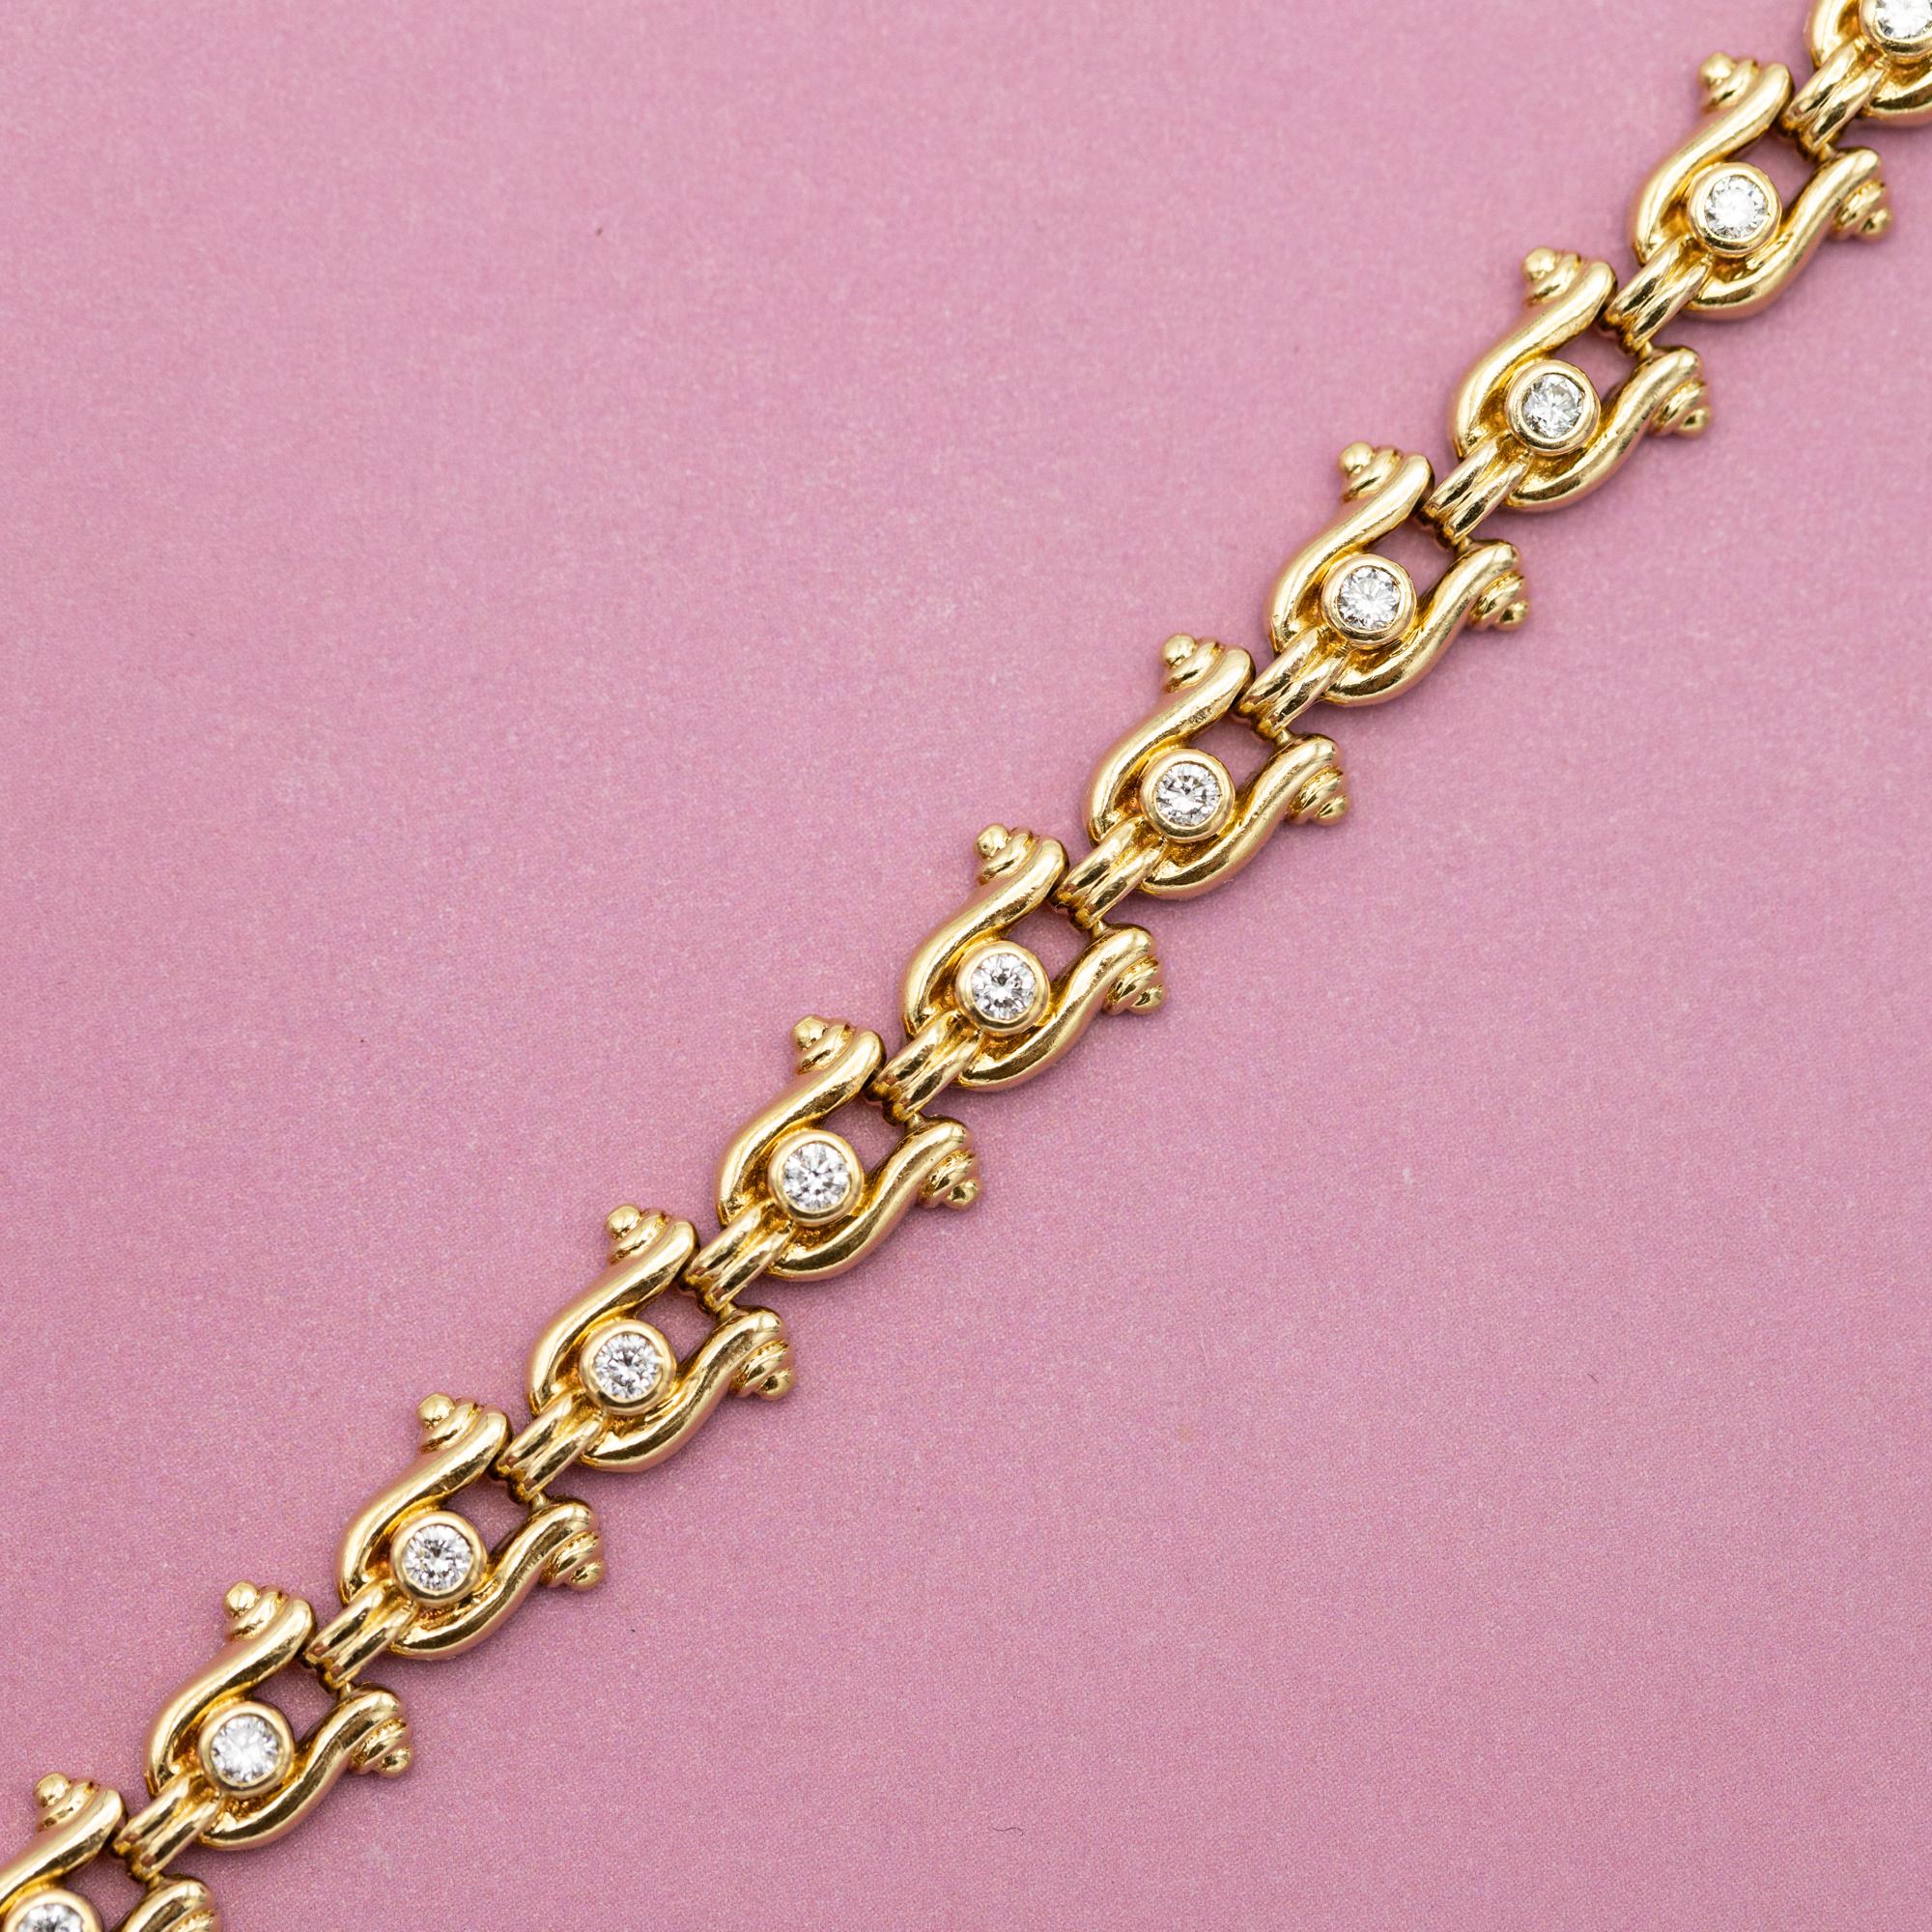 Brilliant Cut Vintage yellow gold Tennis bracelet - Horse shoe - 12.5 gr - 0.62 ct diamonds